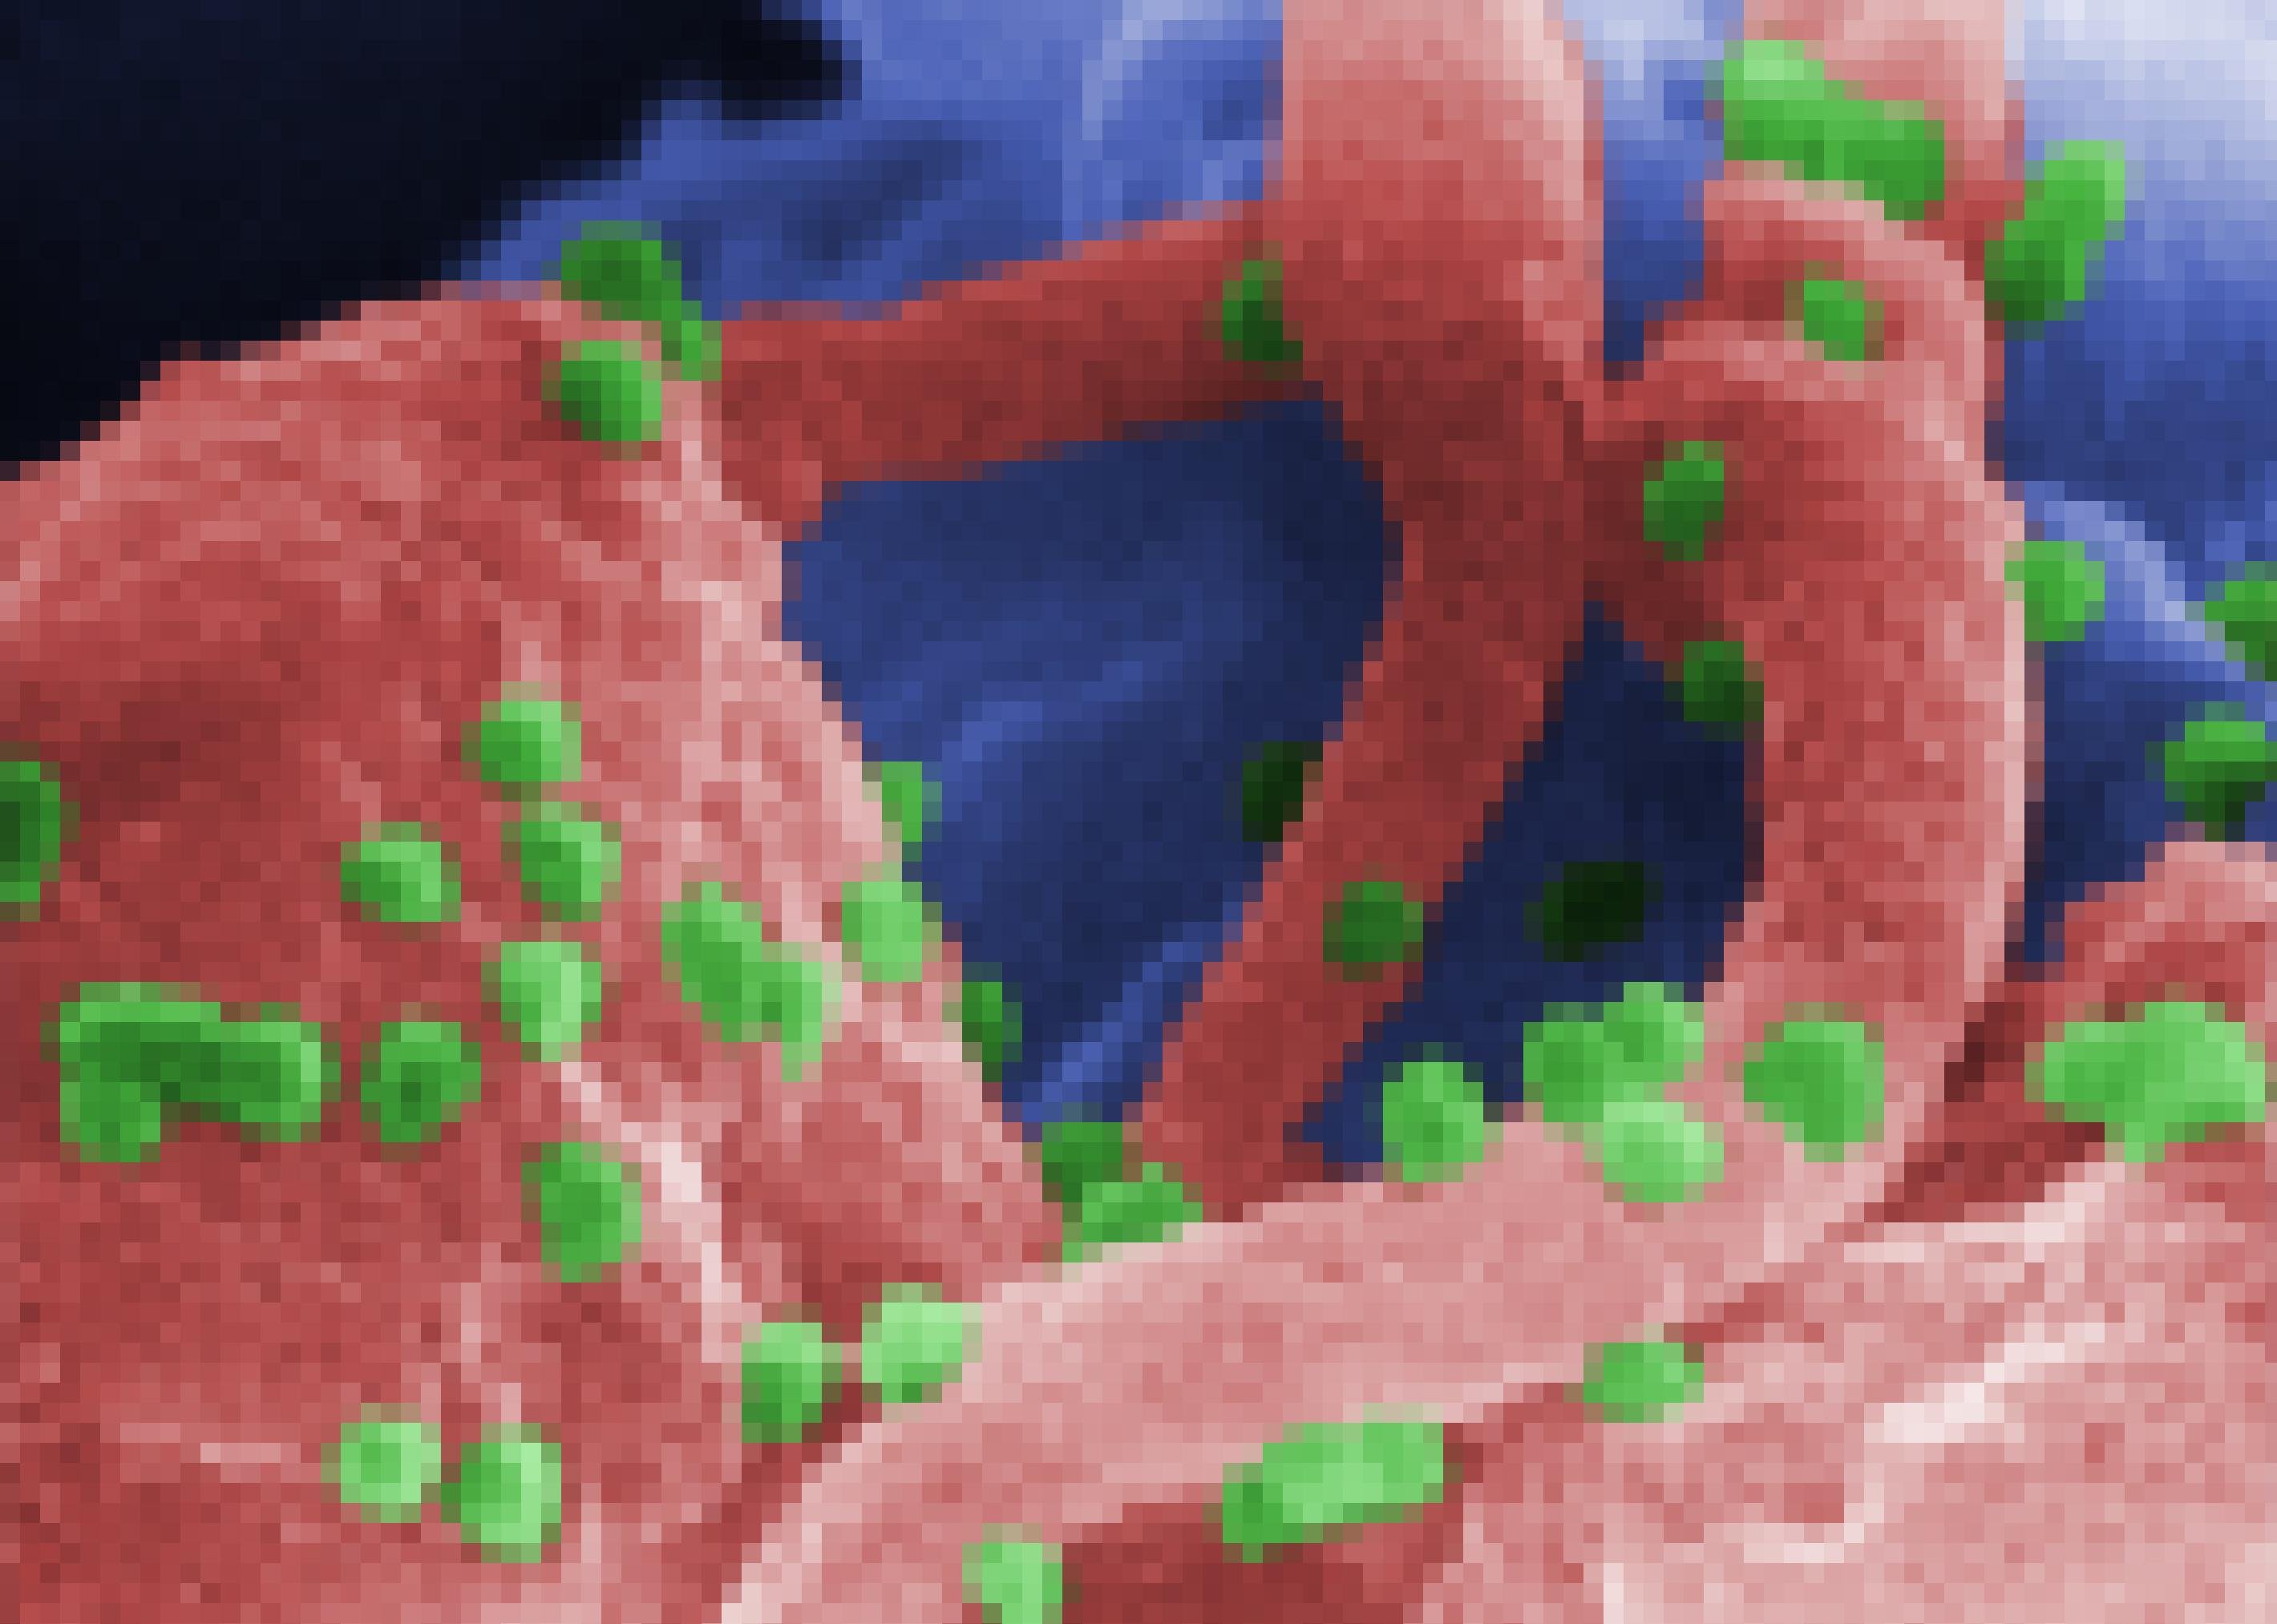 Zu sehen ist die rastermikroskopische Aufnahme von rötlich eingefärbten Abwehrzellen, auf denen grün gefärbte, kleine runde Aidsviren lagern. Die Aidsviren kennen eine besondere Strategie des Überlebens: Sie bringen die Zelle dazu, Kopien der Virus-Erbsubstanz in ihr eigenes Erbgut einzuschleusen. So können die Viren jahrelang ruhen, bis sie sich eines Tages massenhaft vermehren und die Immunschwäche ausbricht.